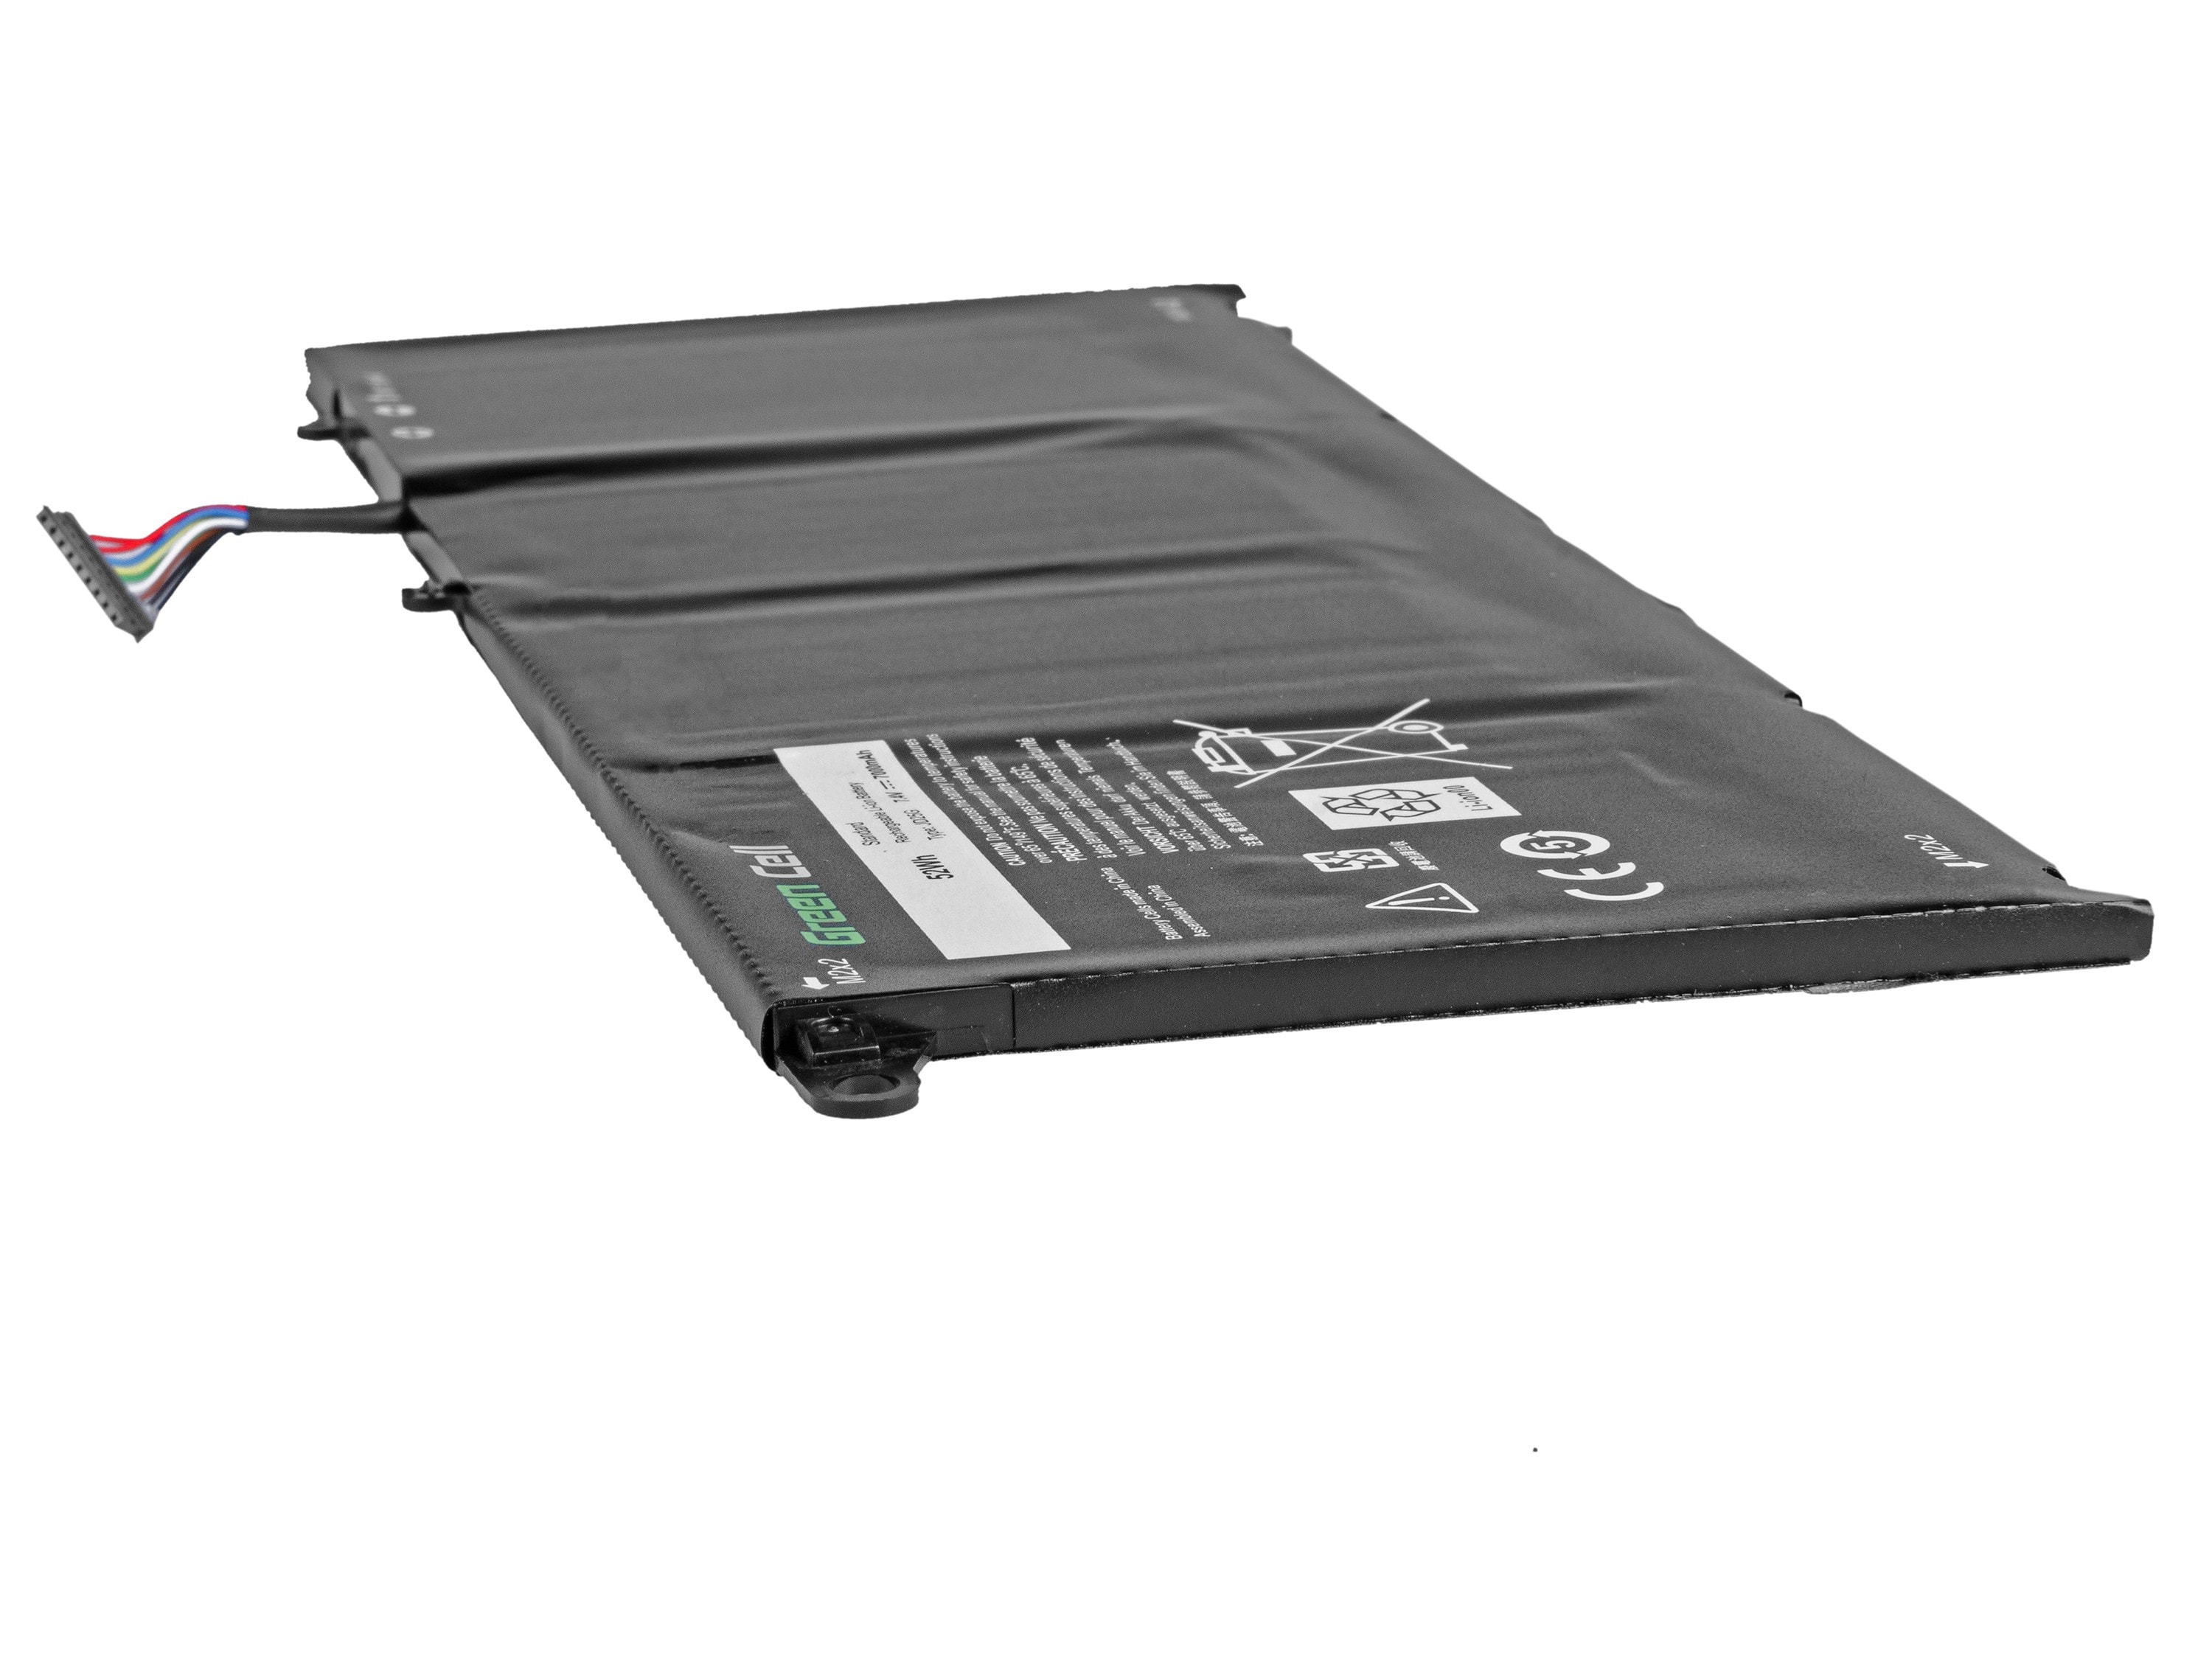 Green Cell laptop batteri til Dell XPS 13 9343 9350 / 7,4V 5600mAh